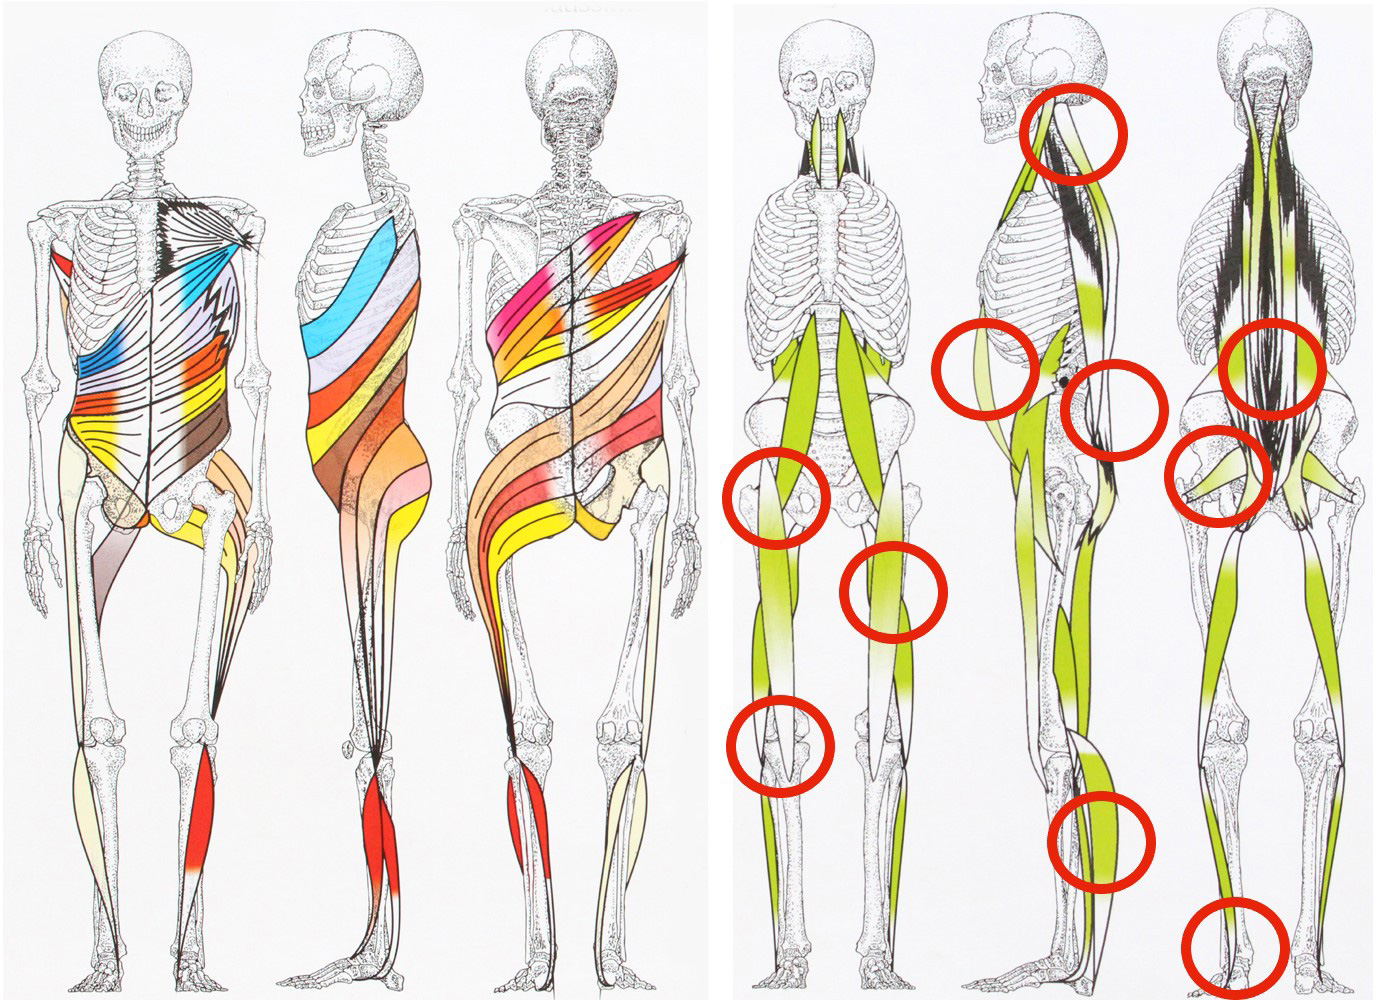 Schmerzen bei Fußballern in den vertikalen Muskelketten: Knieprobleme, Knieschmerzen, Leistenprobleme, Oberschenkelzerrung, Wadenprobleme, ISG-Schmerzen, Bandscheibenvorfall